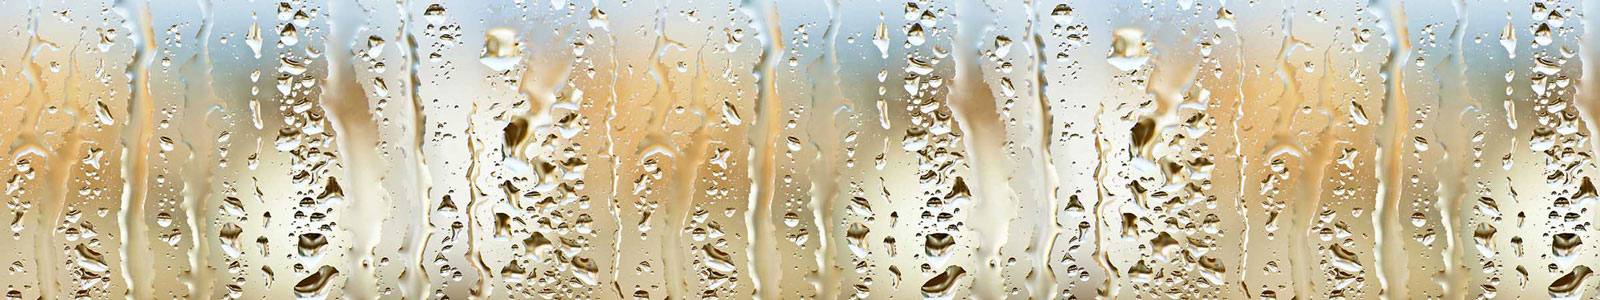 №3928 - Капли воды на стекле